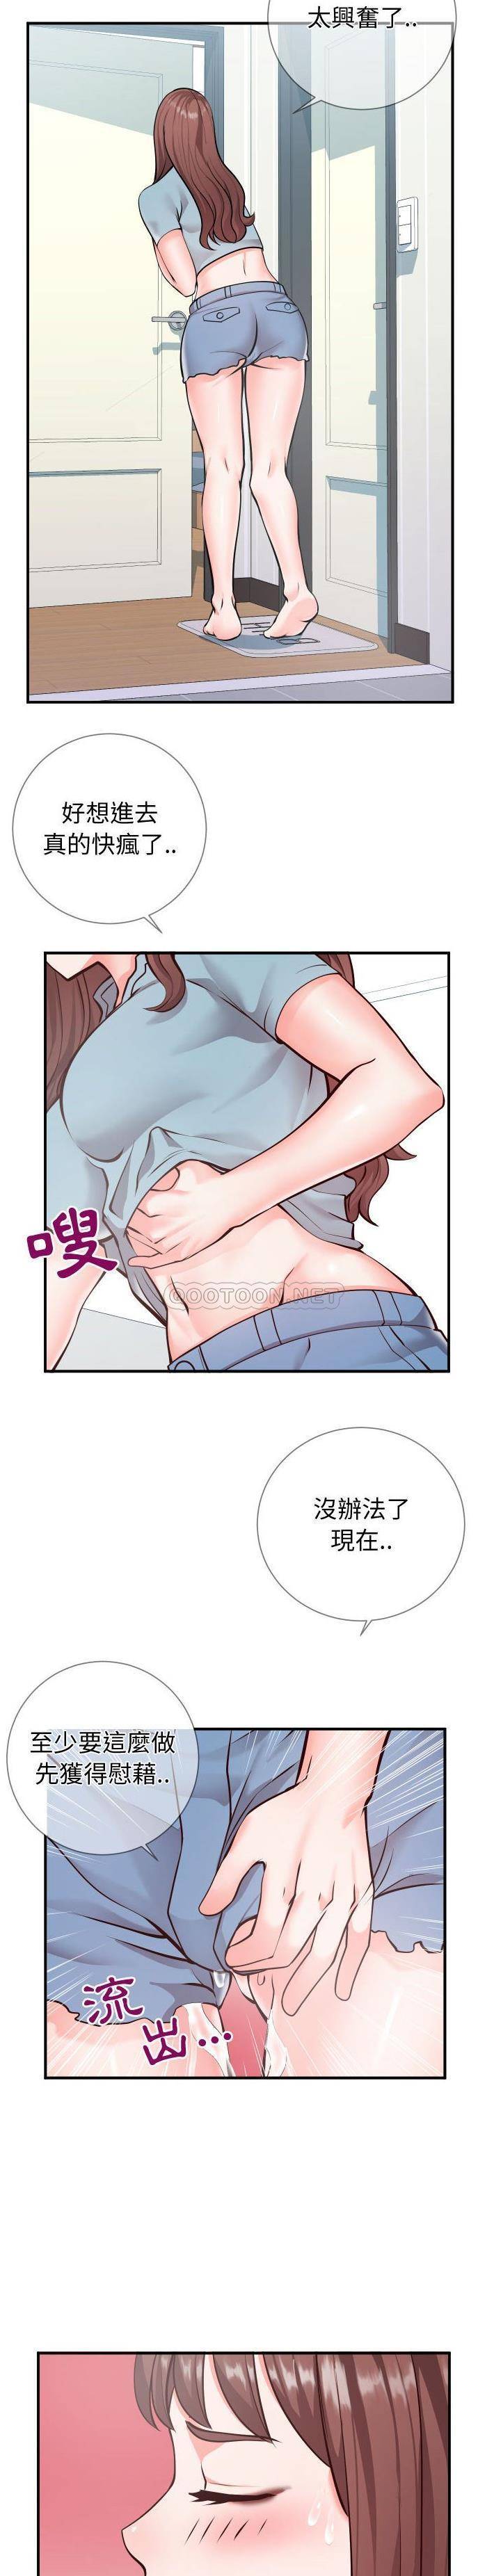 韩国污漫画 偶然同住/同一屋簷 第9话 2